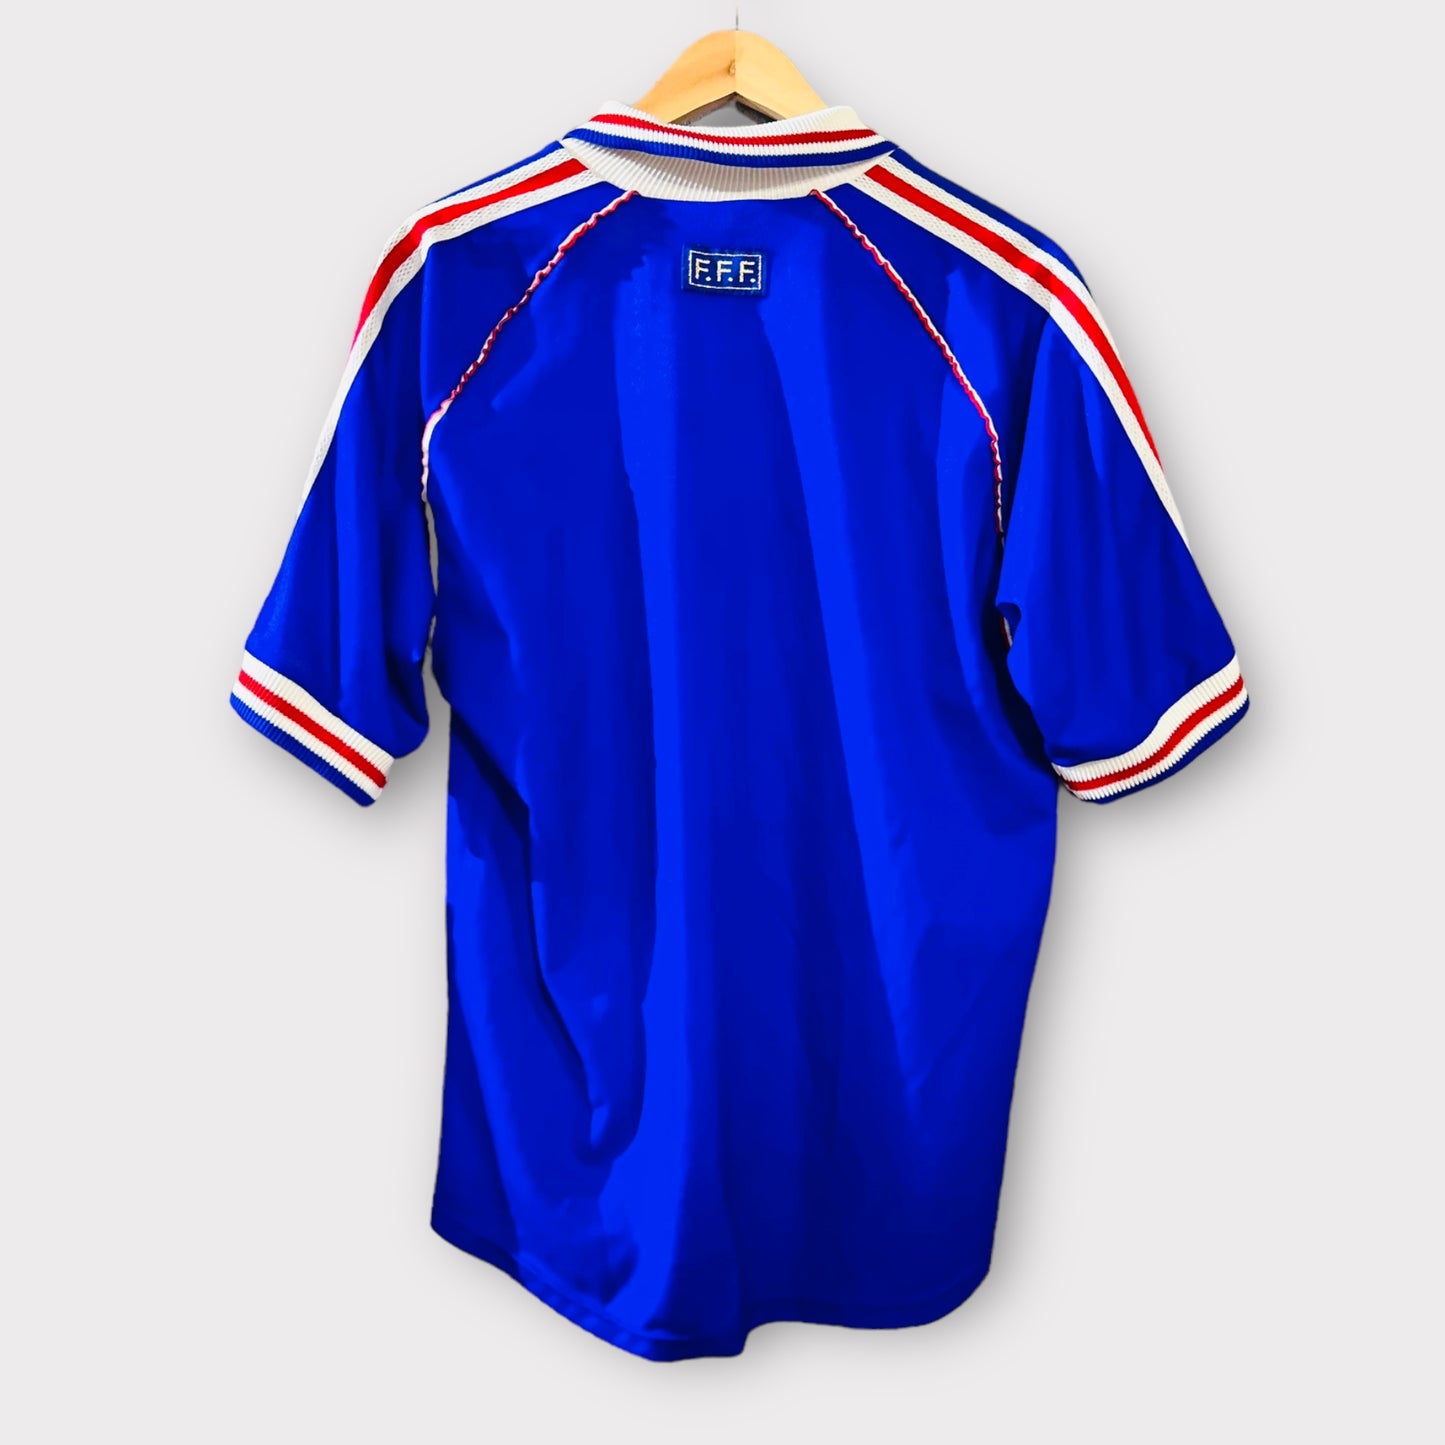 France 1998 Home Shirt (Medium)